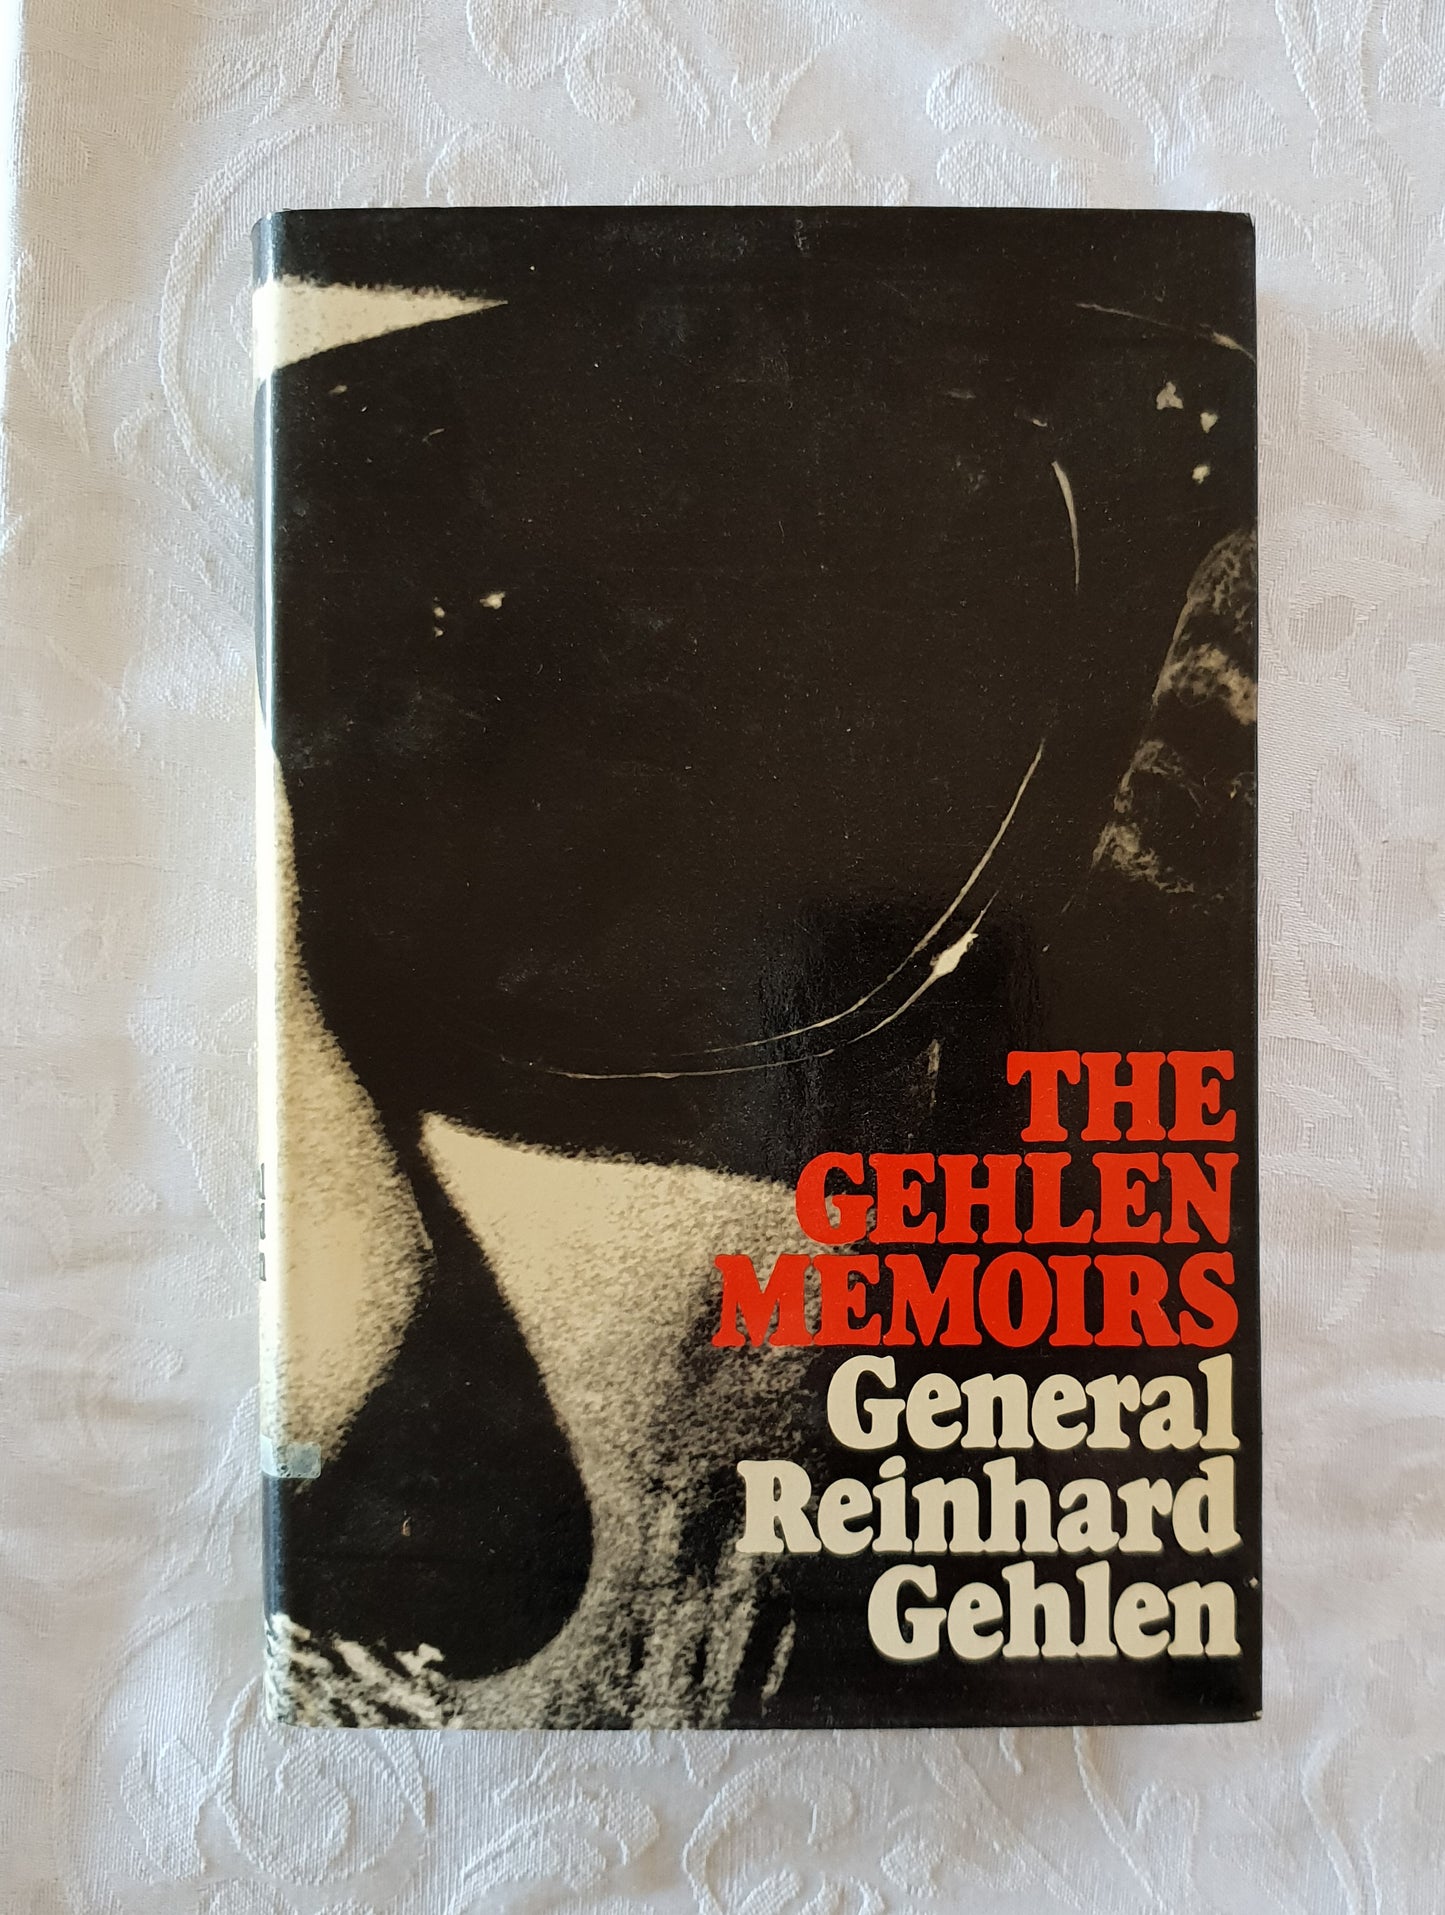 The Gehlen Memoirs by Reinhard Gehlen